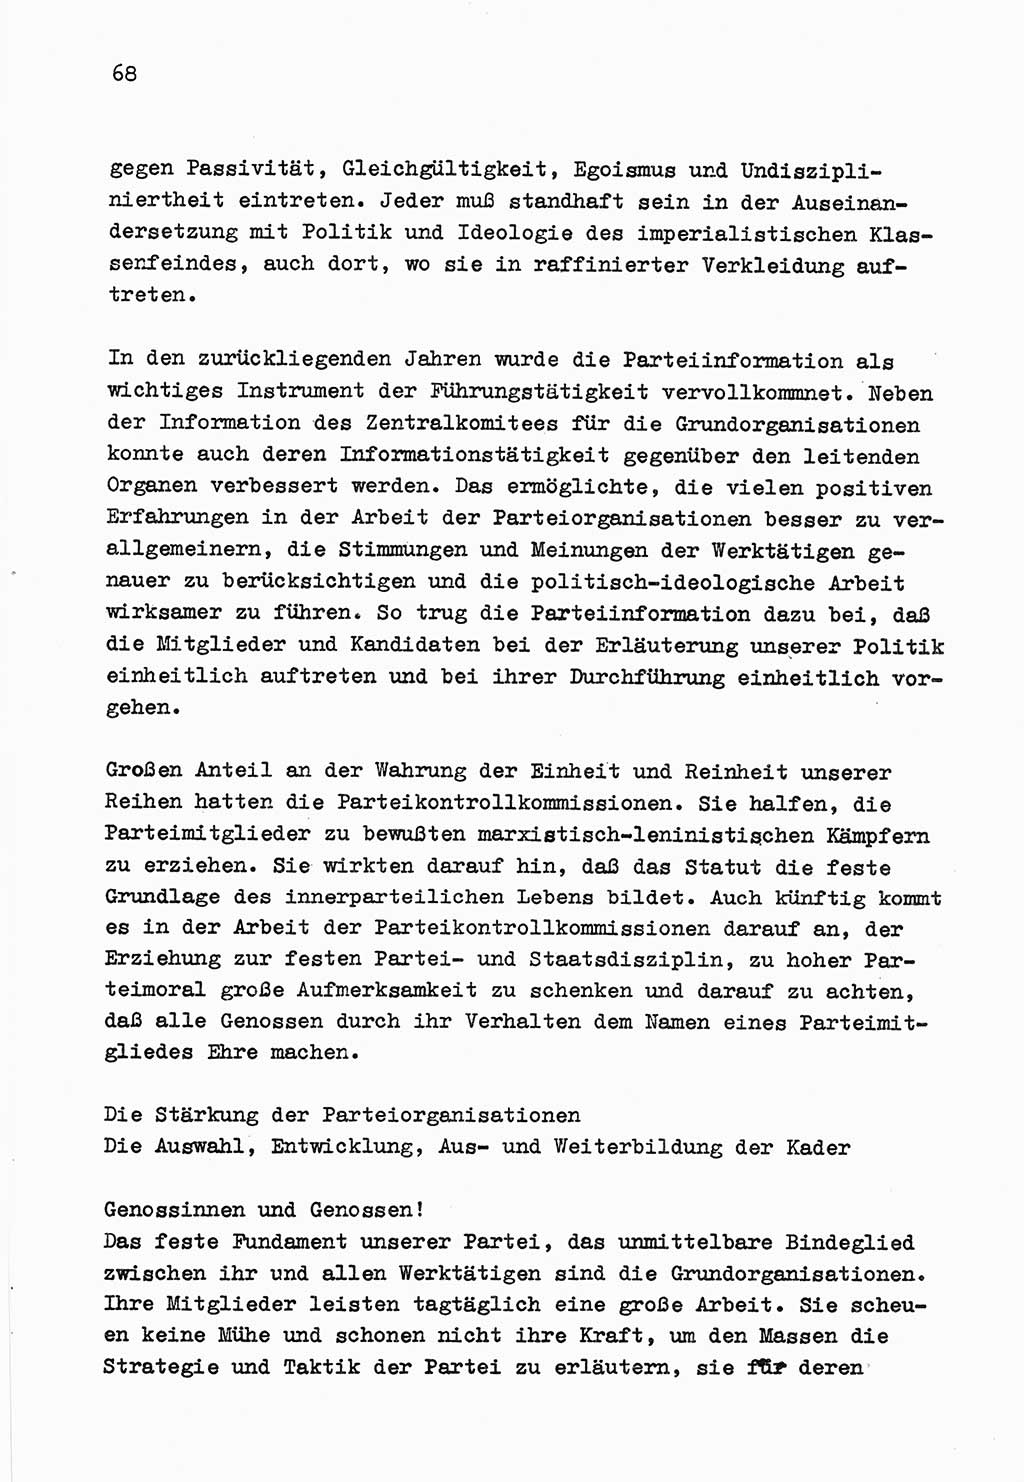 Zu Fragen der Parteiarbeit [Sozialistische Einheitspartei Deutschlands (SED) Deutsche Demokratische Republik (DDR)] 1979, Seite 68 (Fr. PA SED DDR 1979, S. 68)